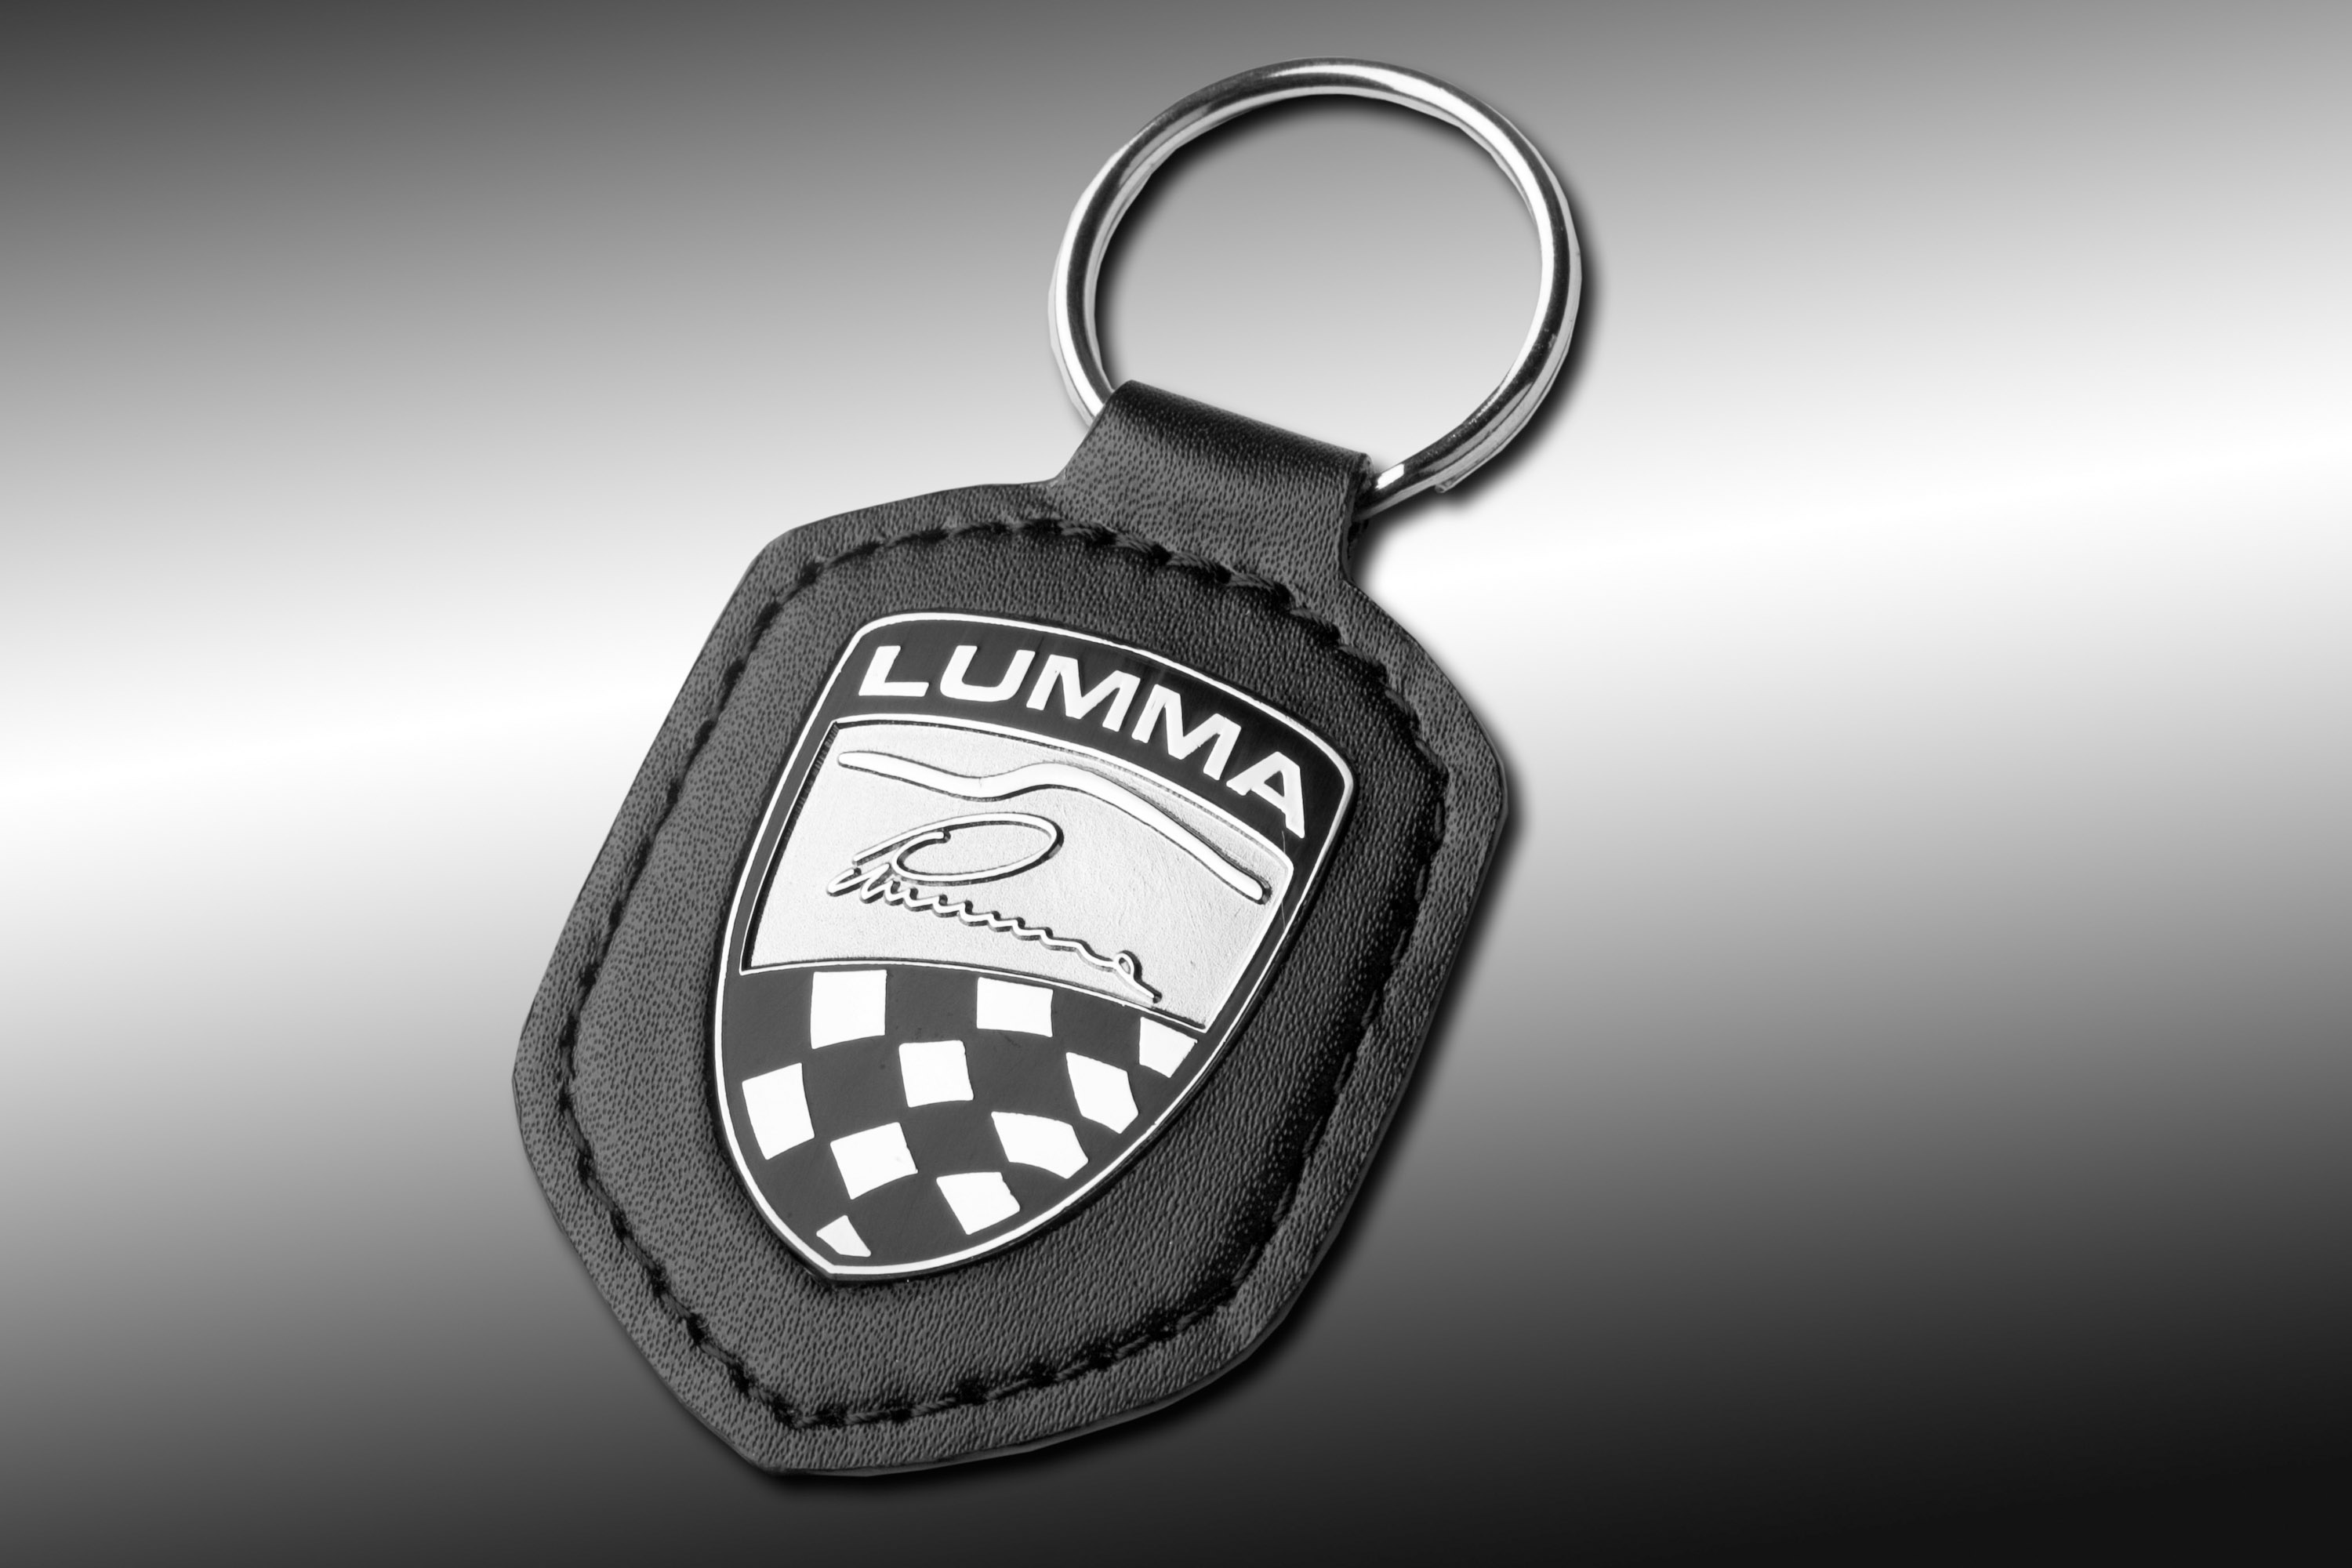 Lumma Design  Range Rover